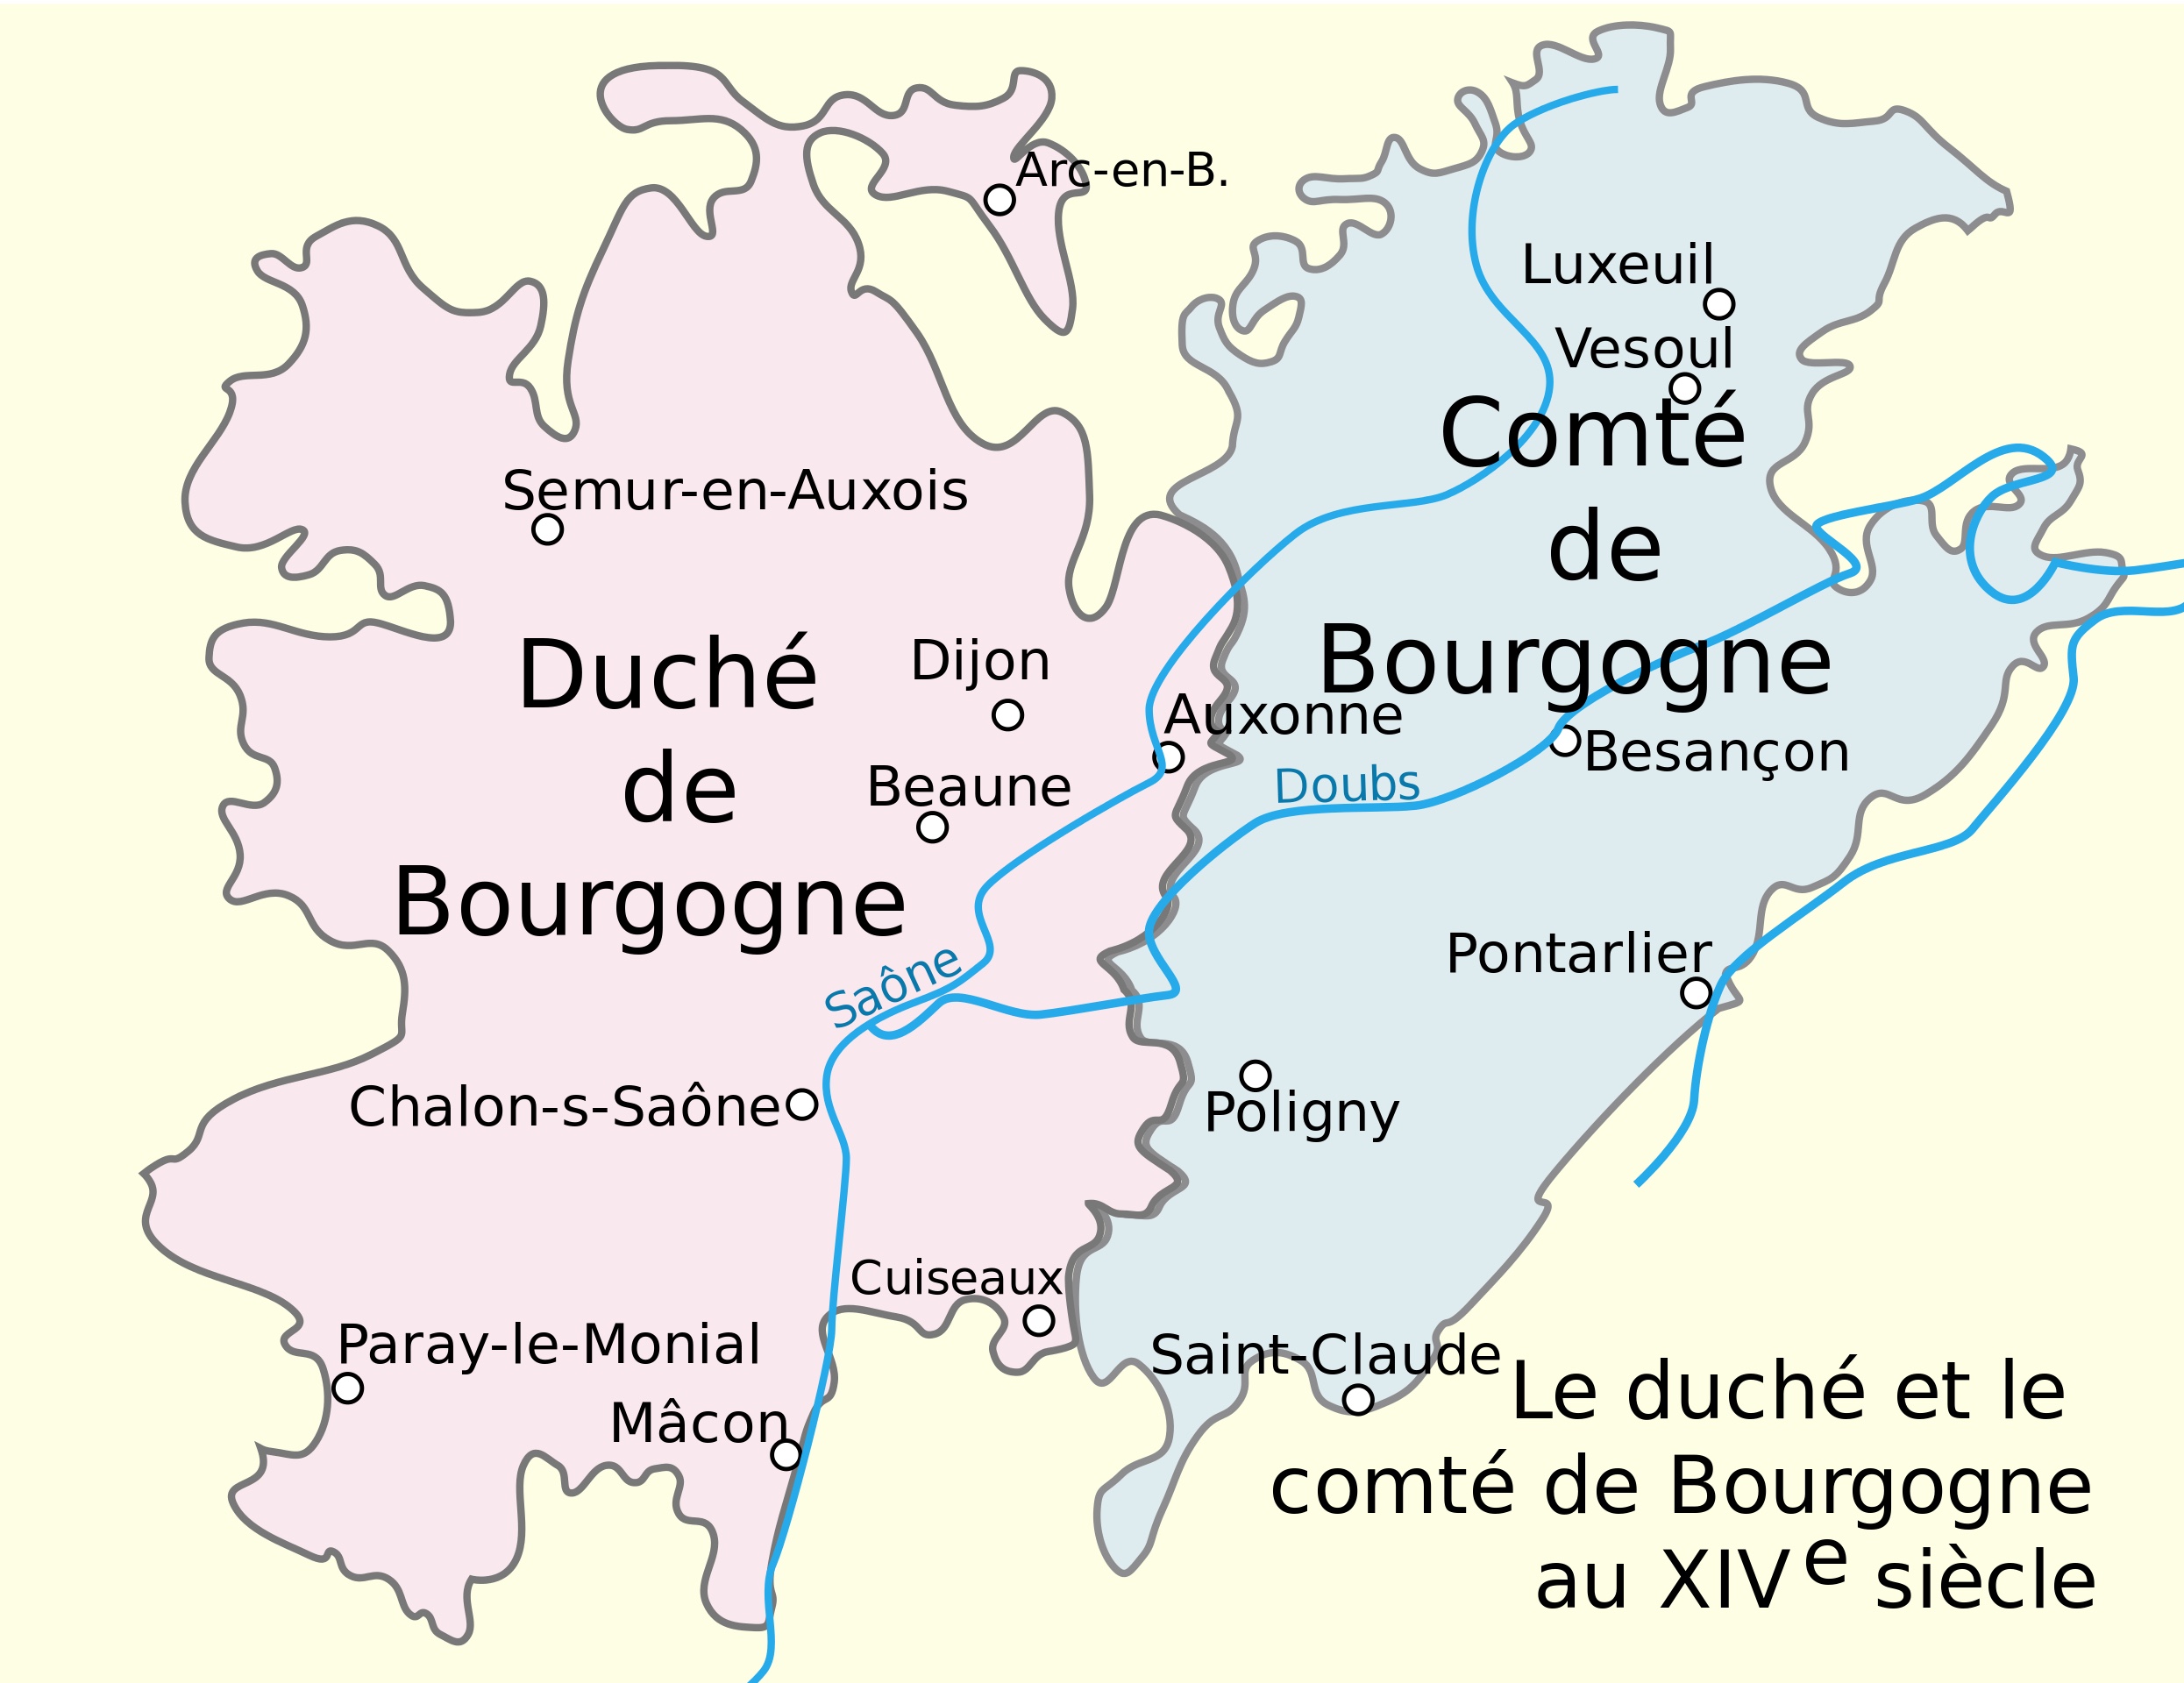 Le duché et le comté de Bourgogne au XIV°